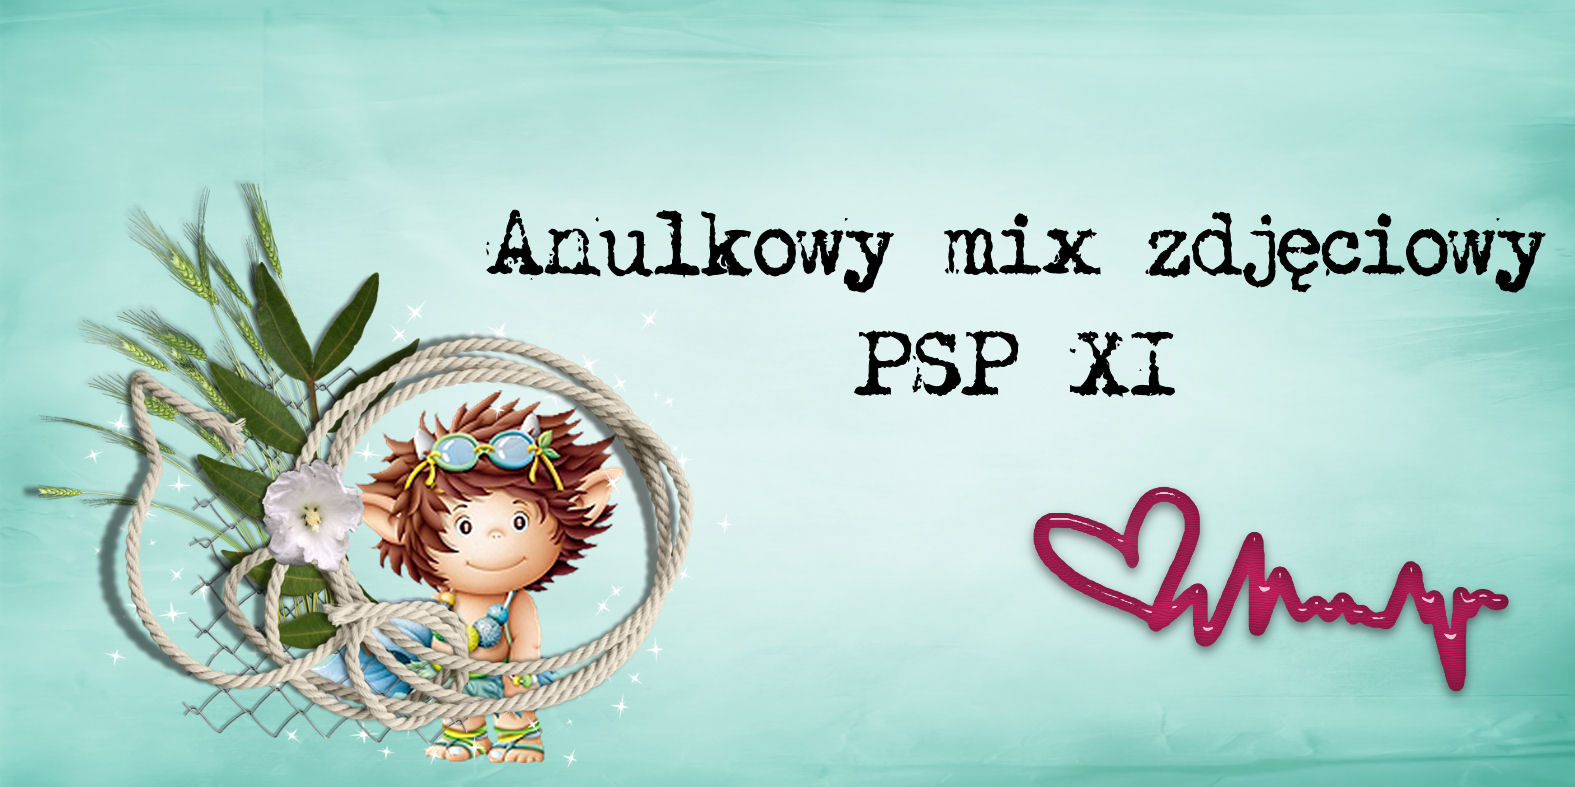 Anulkowy mix zdjęciowy - PSP XI